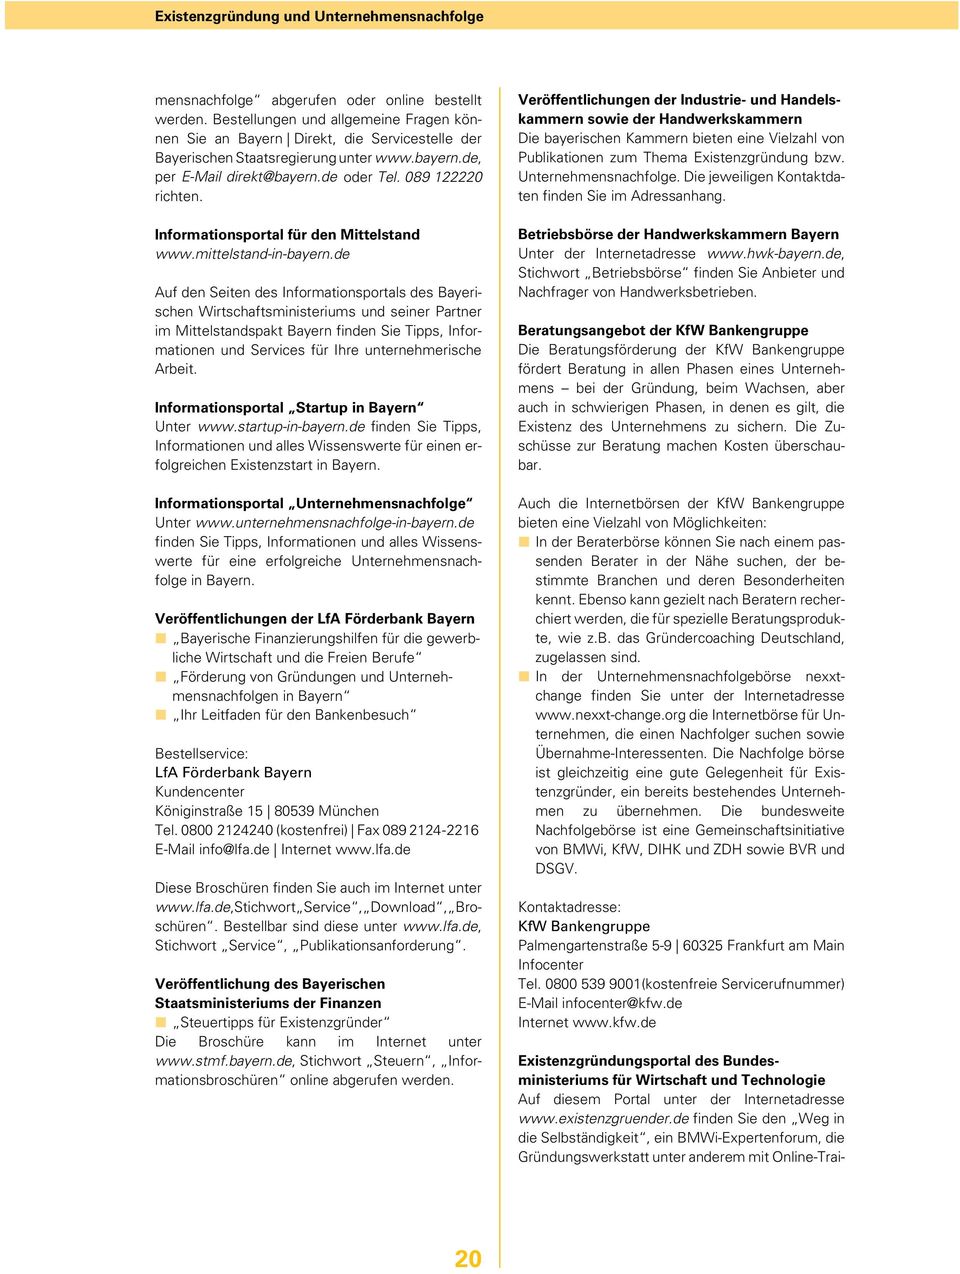 Informationsportal für den Mittelstand www.mittelstand-in-bayern.